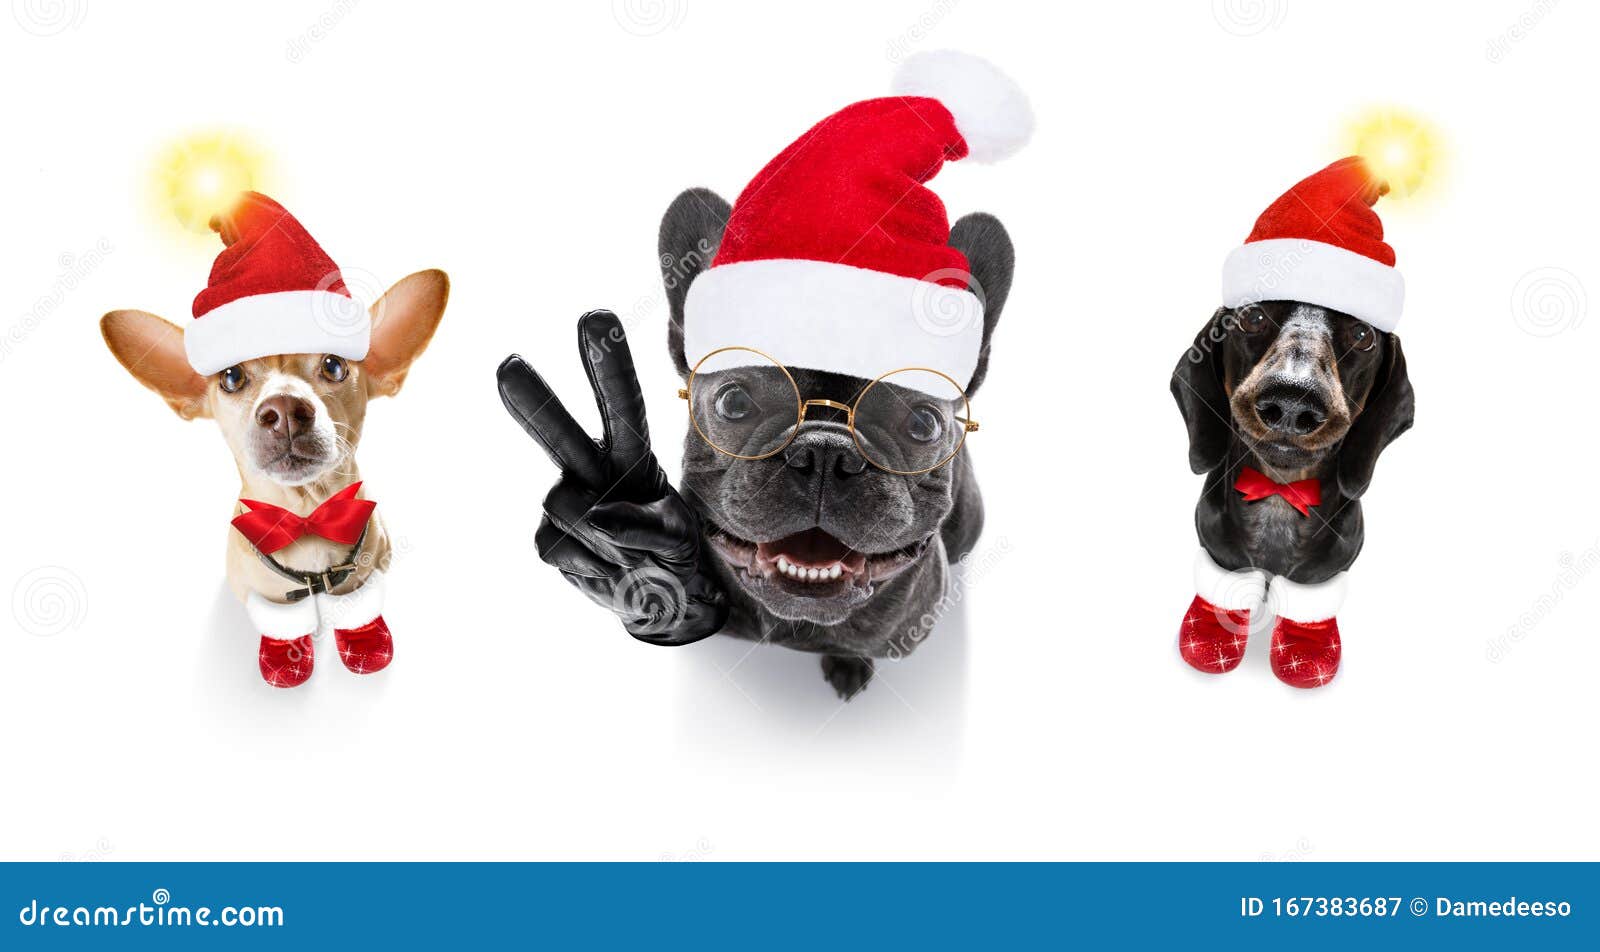 Bạn đang tìm kiếm một bộ ảnh chó Giáng sinh đầy đủ và miễn phí cho ngày lễ của mình? Hãy truy cập ngay để được tận hưởng những khoảnh khắc đầy niềm vui cùng những chú cún đáng yêu!